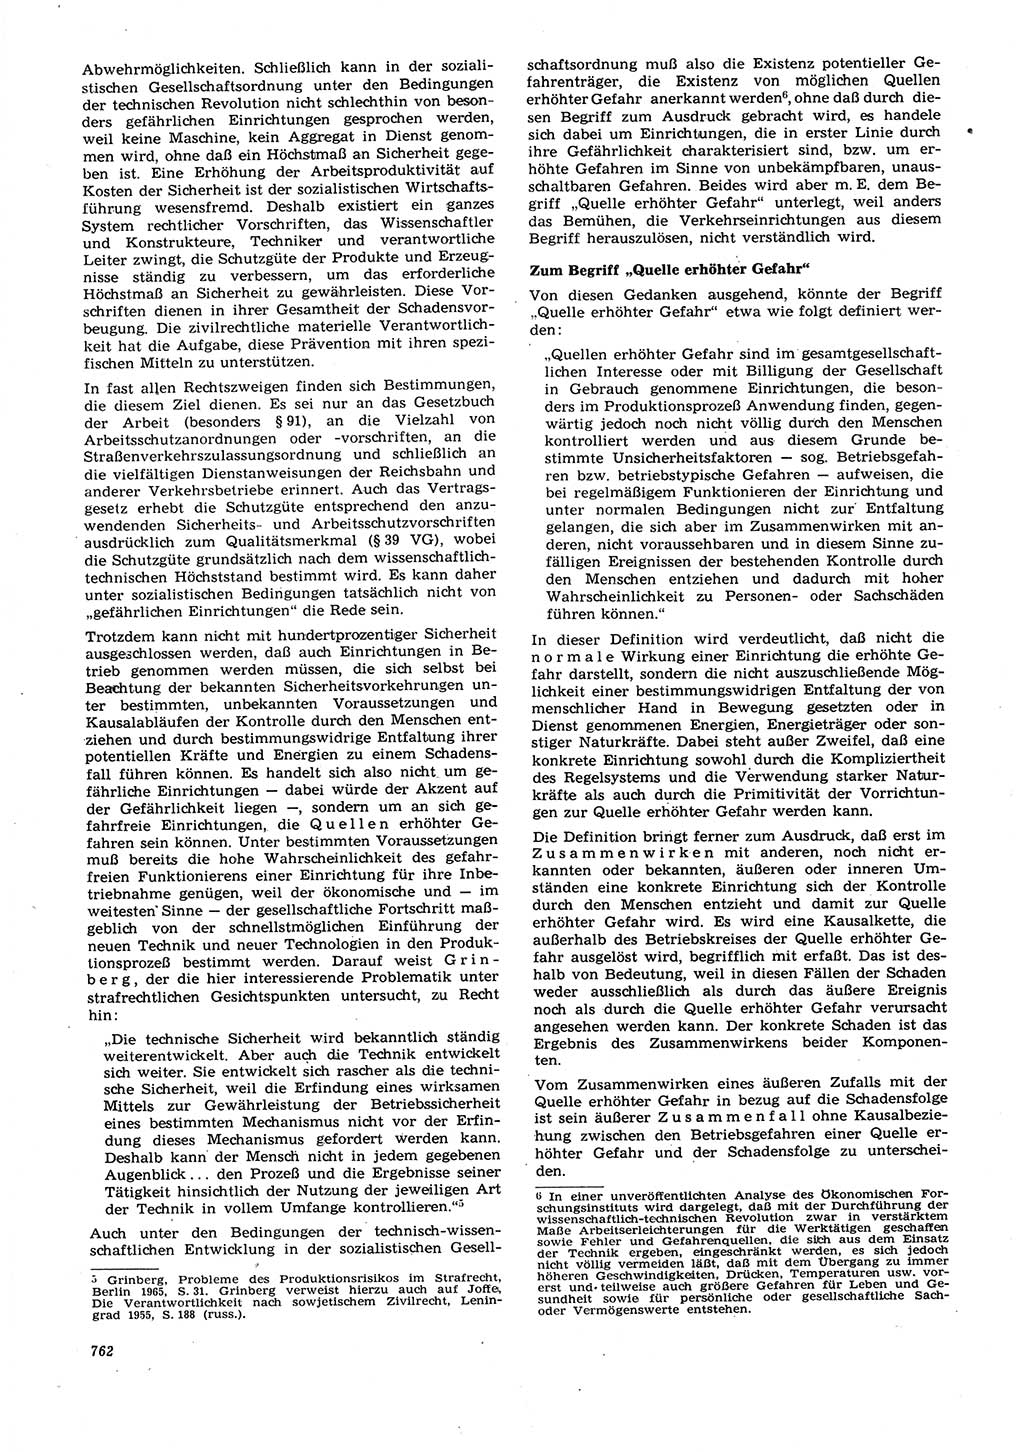 Neue Justiz (NJ), Zeitschrift für Recht und Rechtswissenschaft [Deutsche Demokratische Republik (DDR)], 21. Jahrgang 1967, Seite 762 (NJ DDR 1967, S. 762)